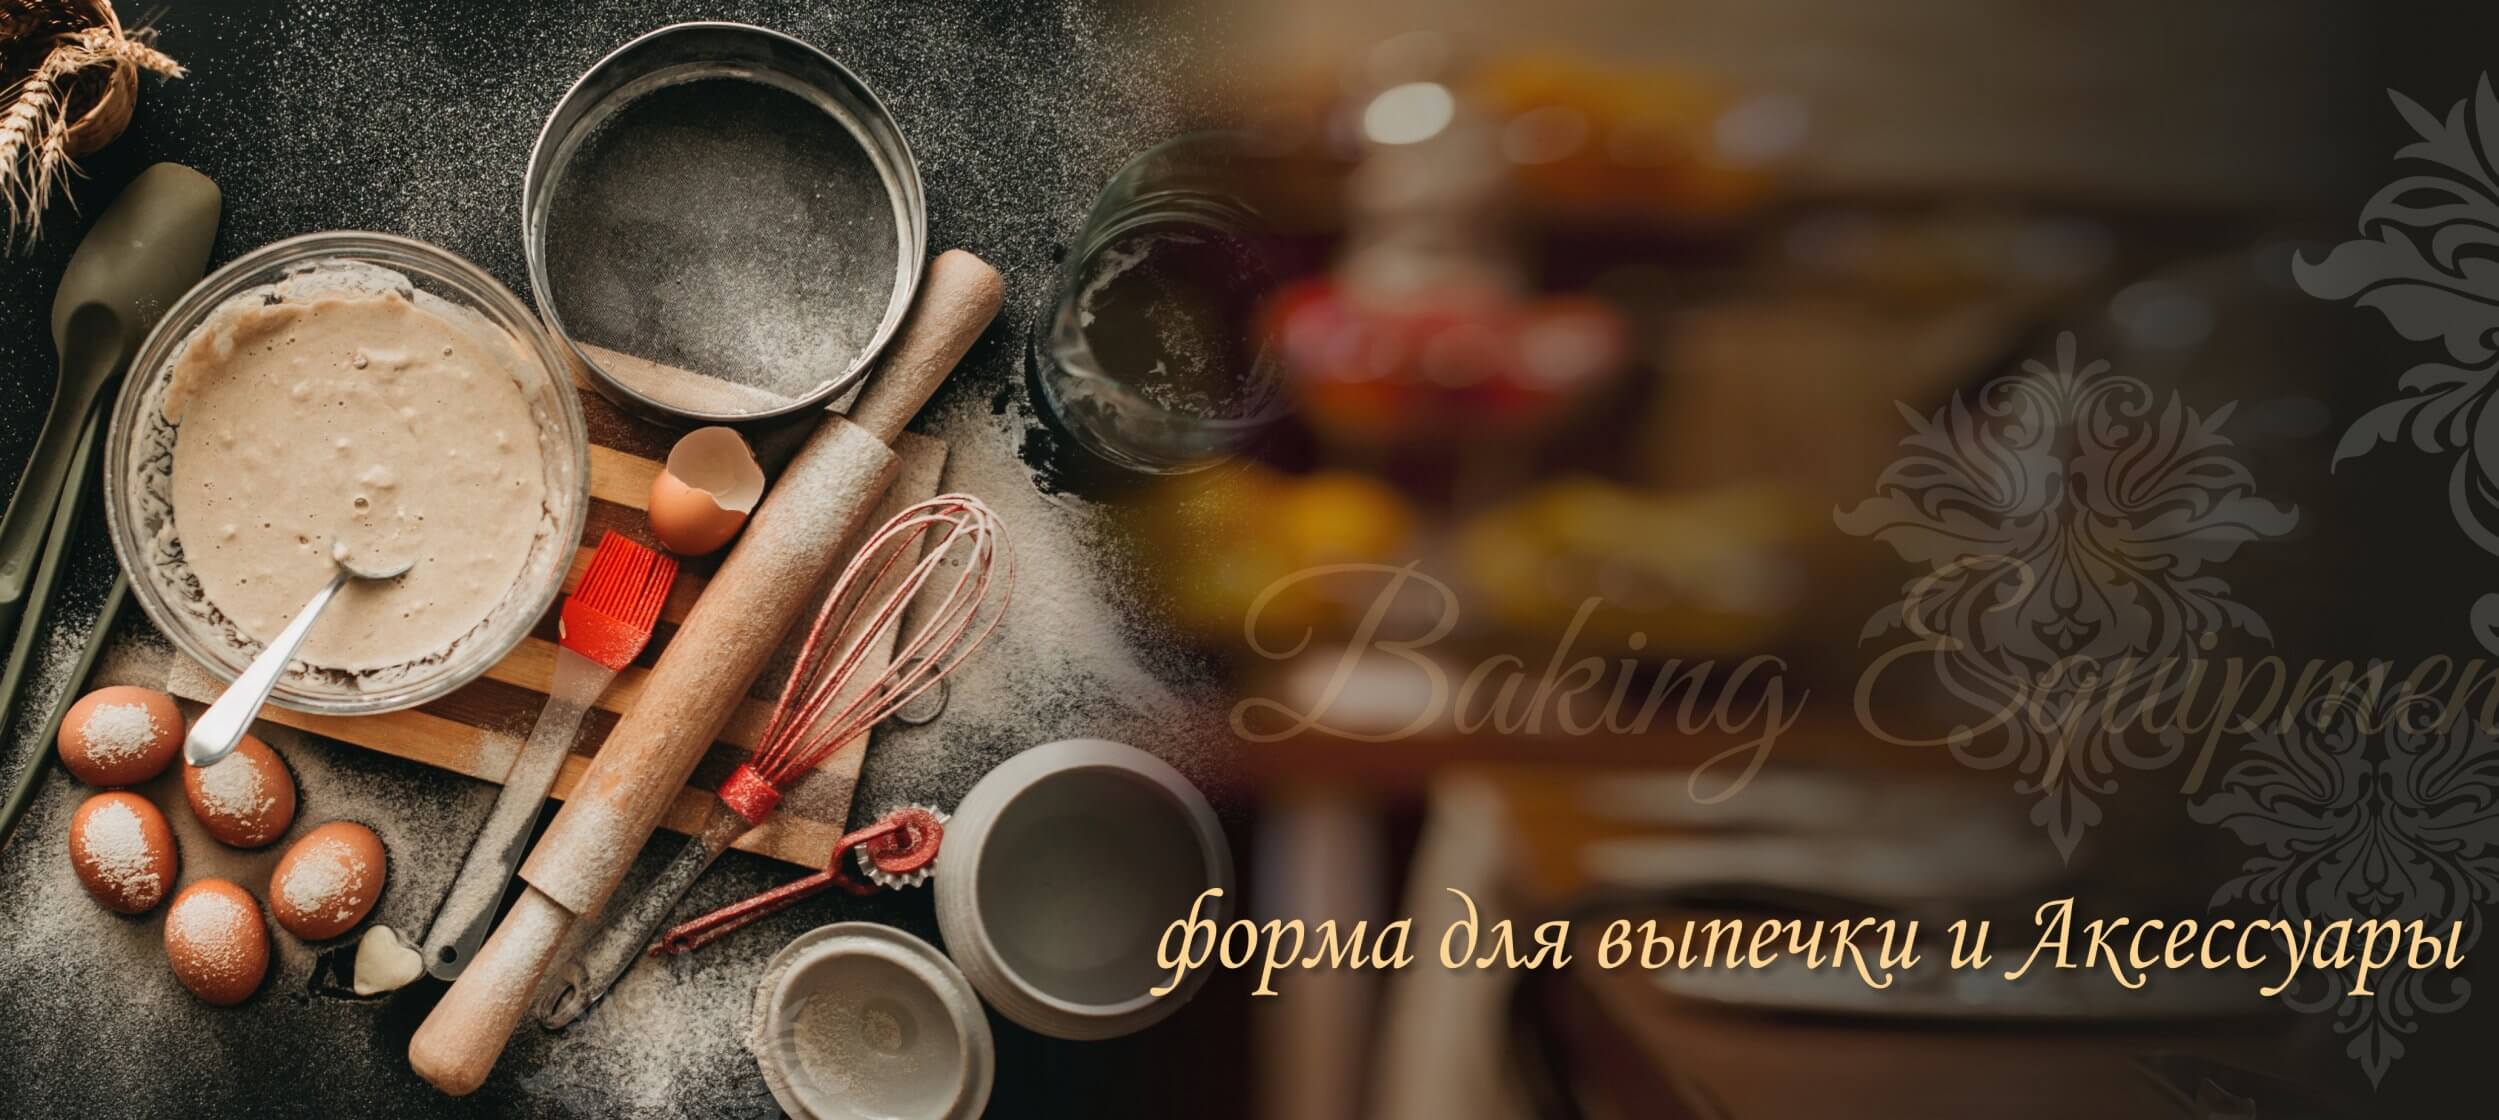 Інтернет магазин посуду paraskevat.ru - купити посуд в Києві з доставкою по Україні